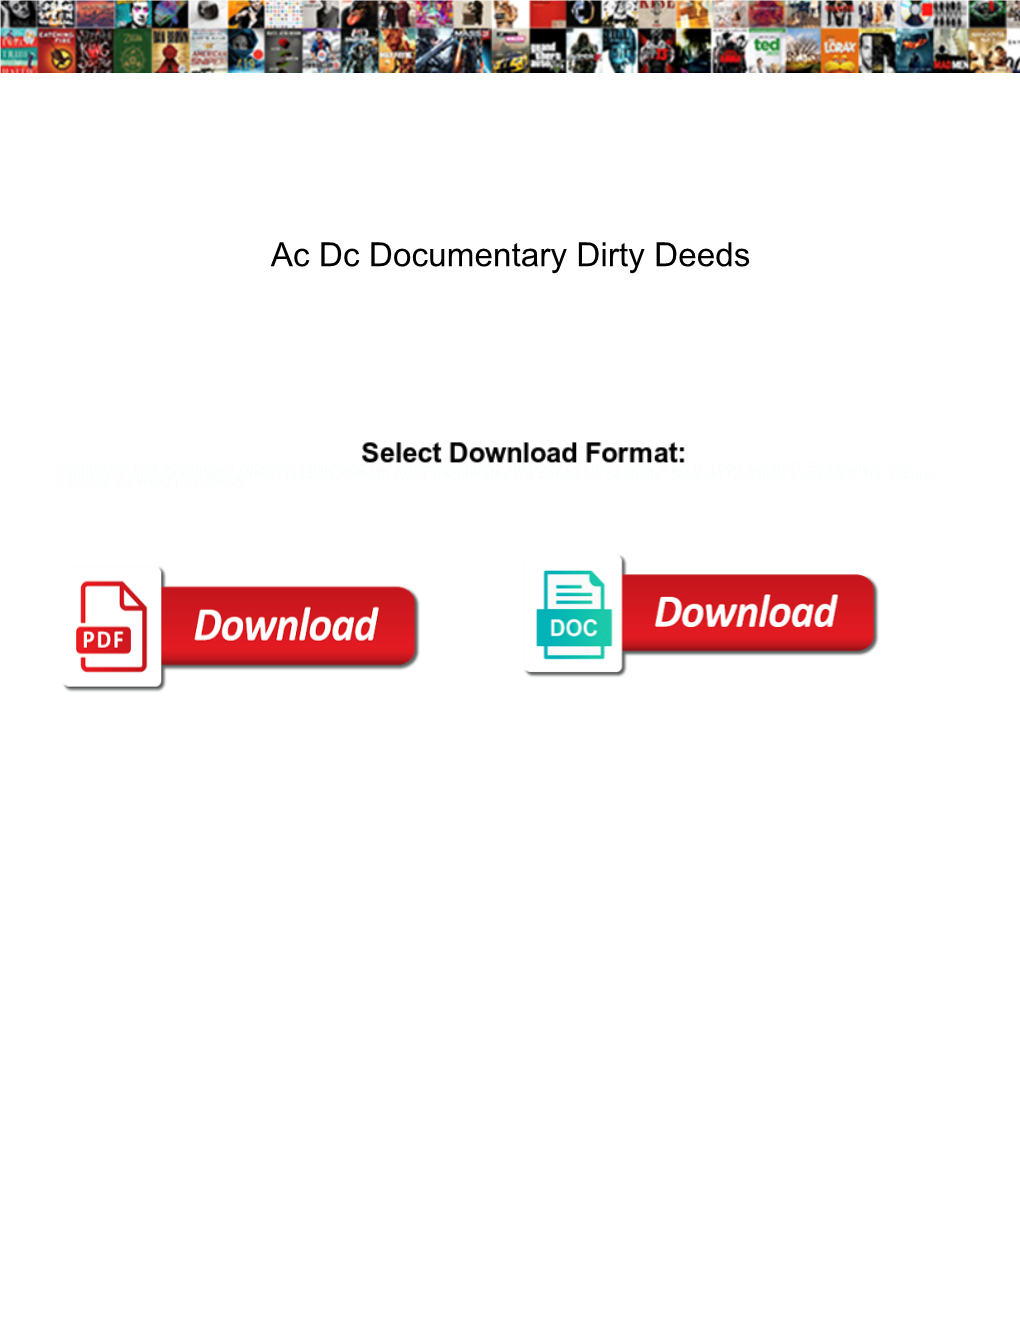 Ac Dc Documentary Dirty Deeds